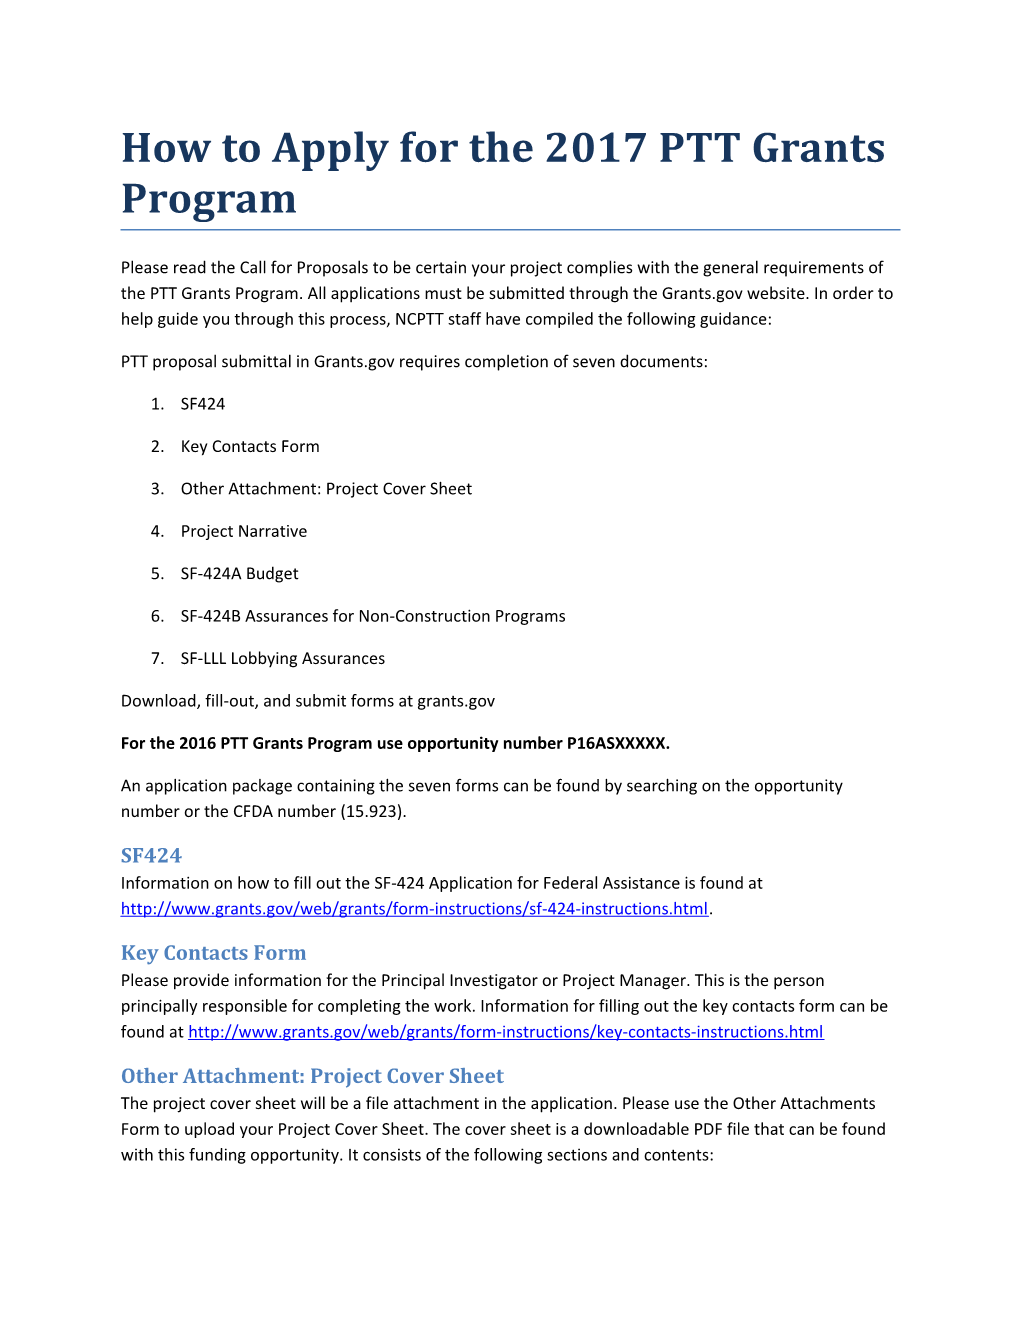 How to Apply for the 2017 PTT Grants Program